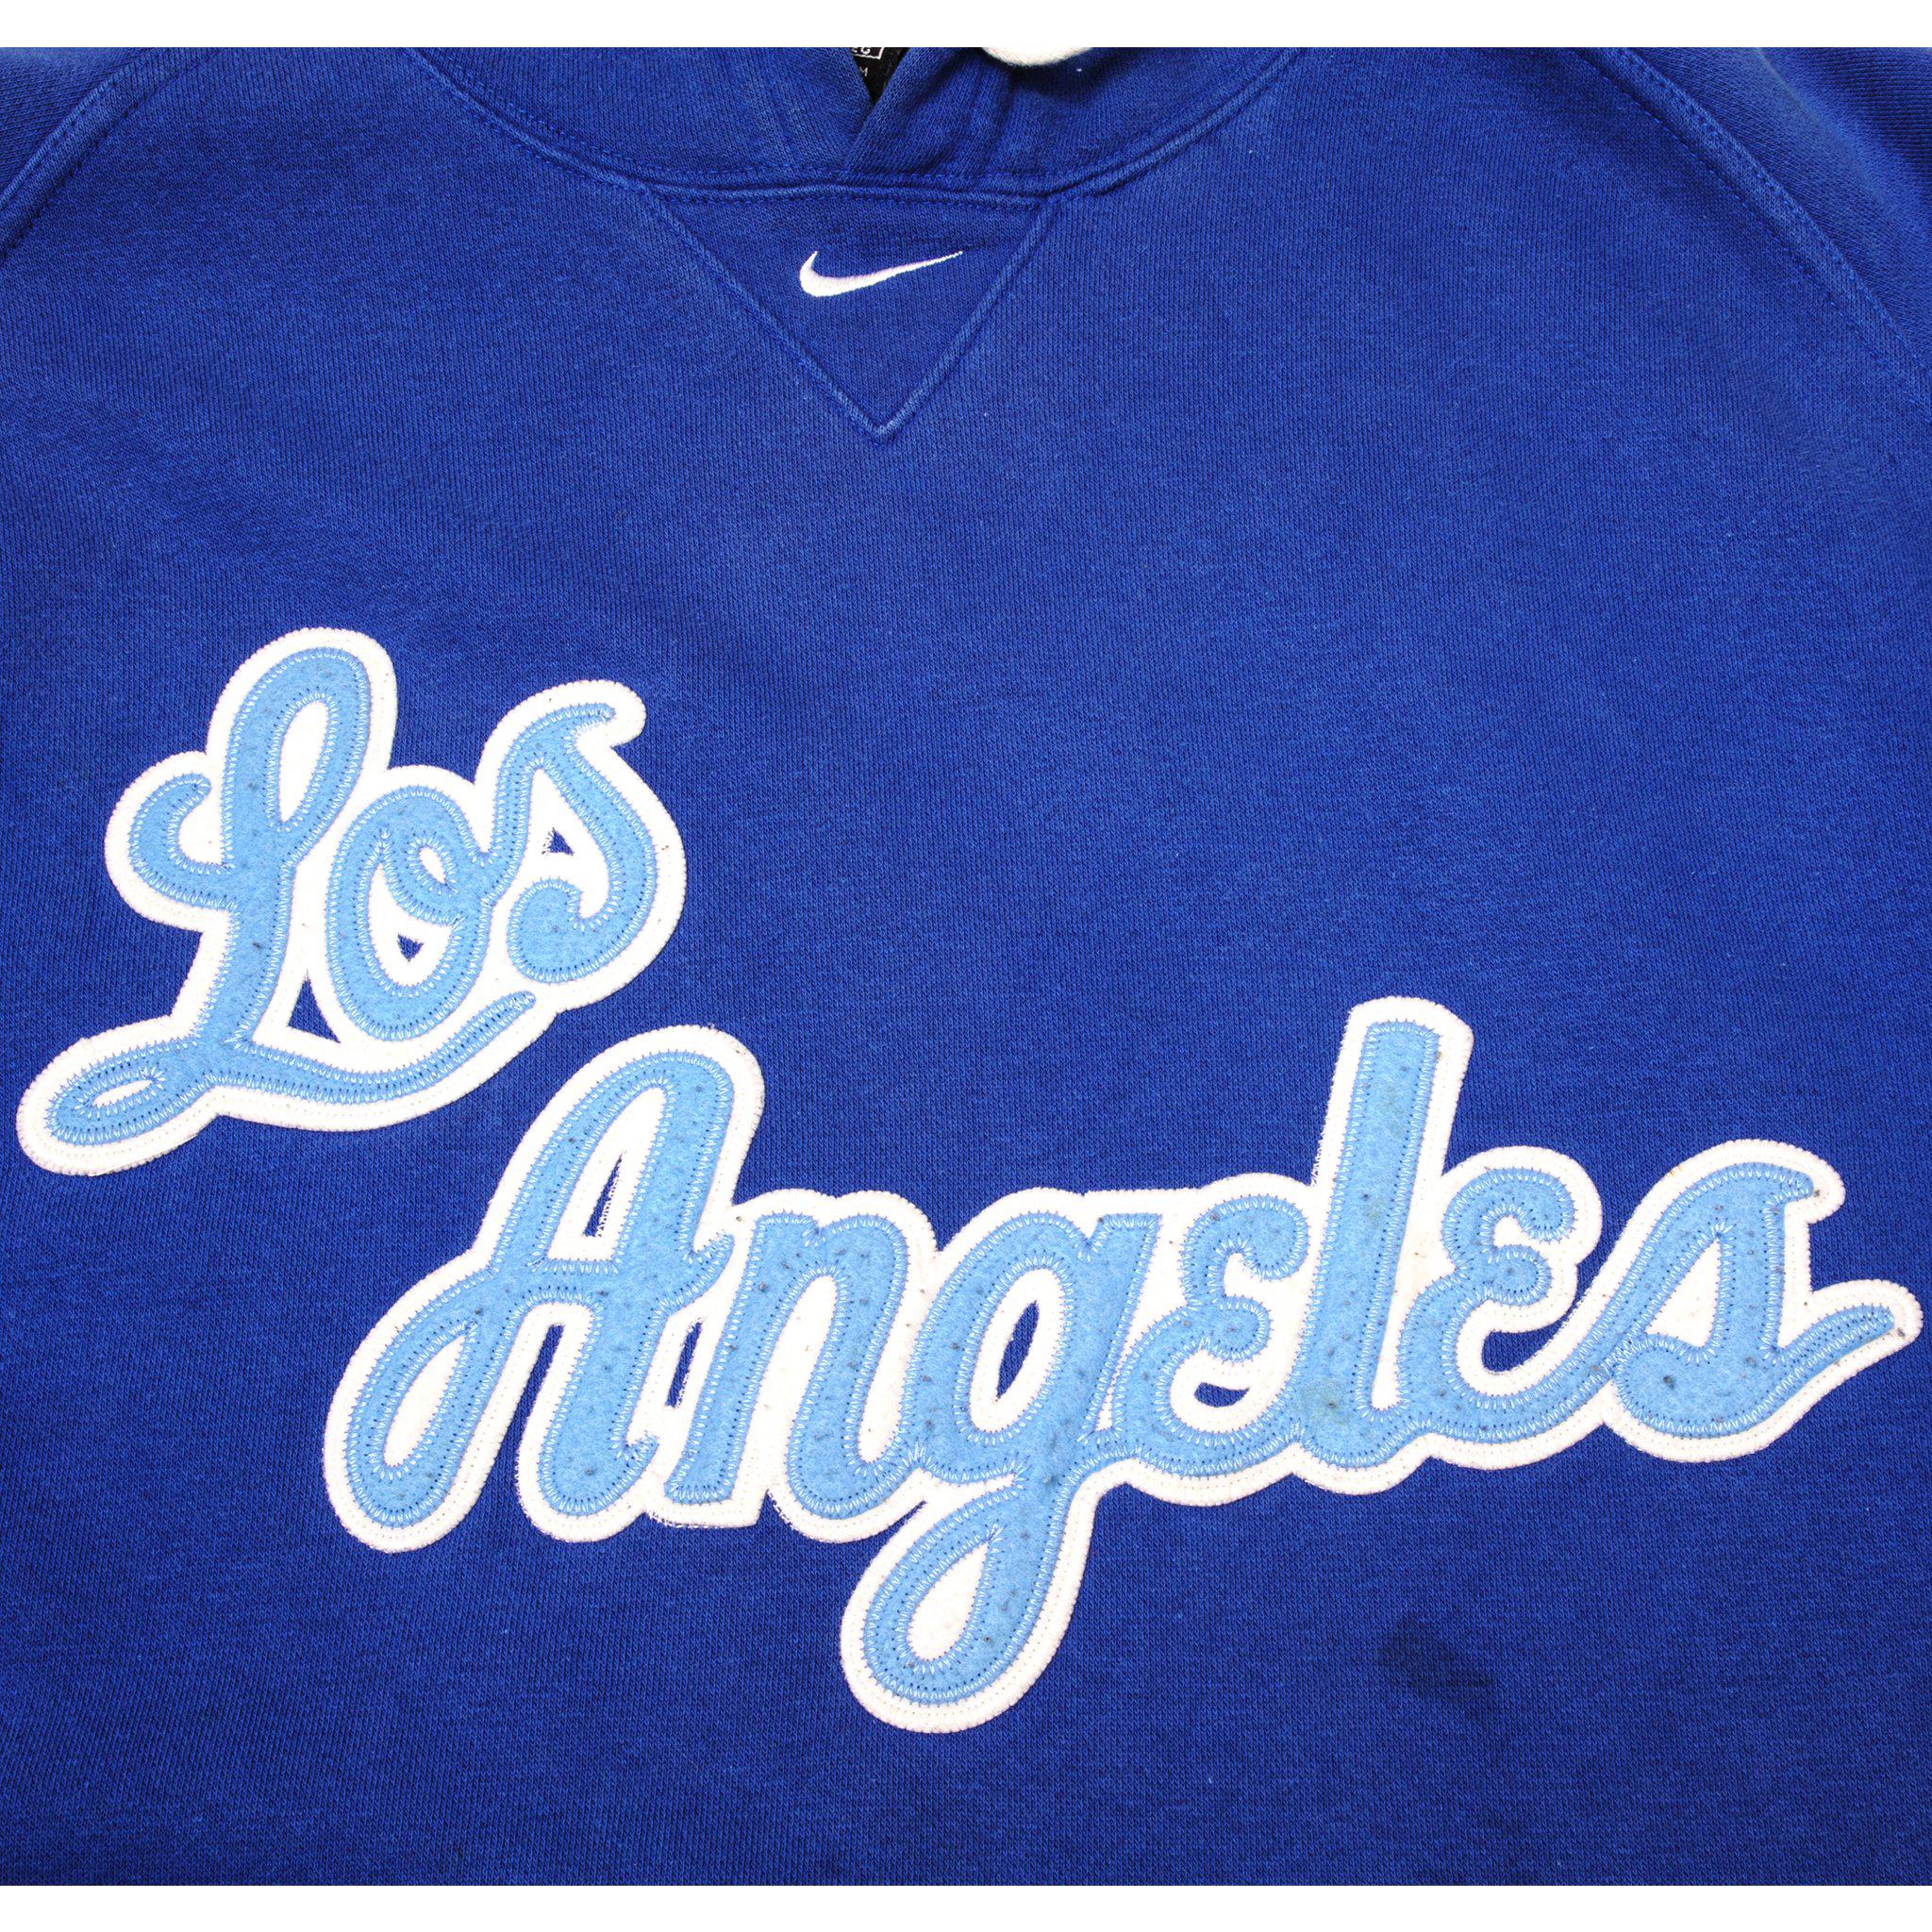 Vintage NBA Los Angeles Lakers Sweatshirt Big Printed American